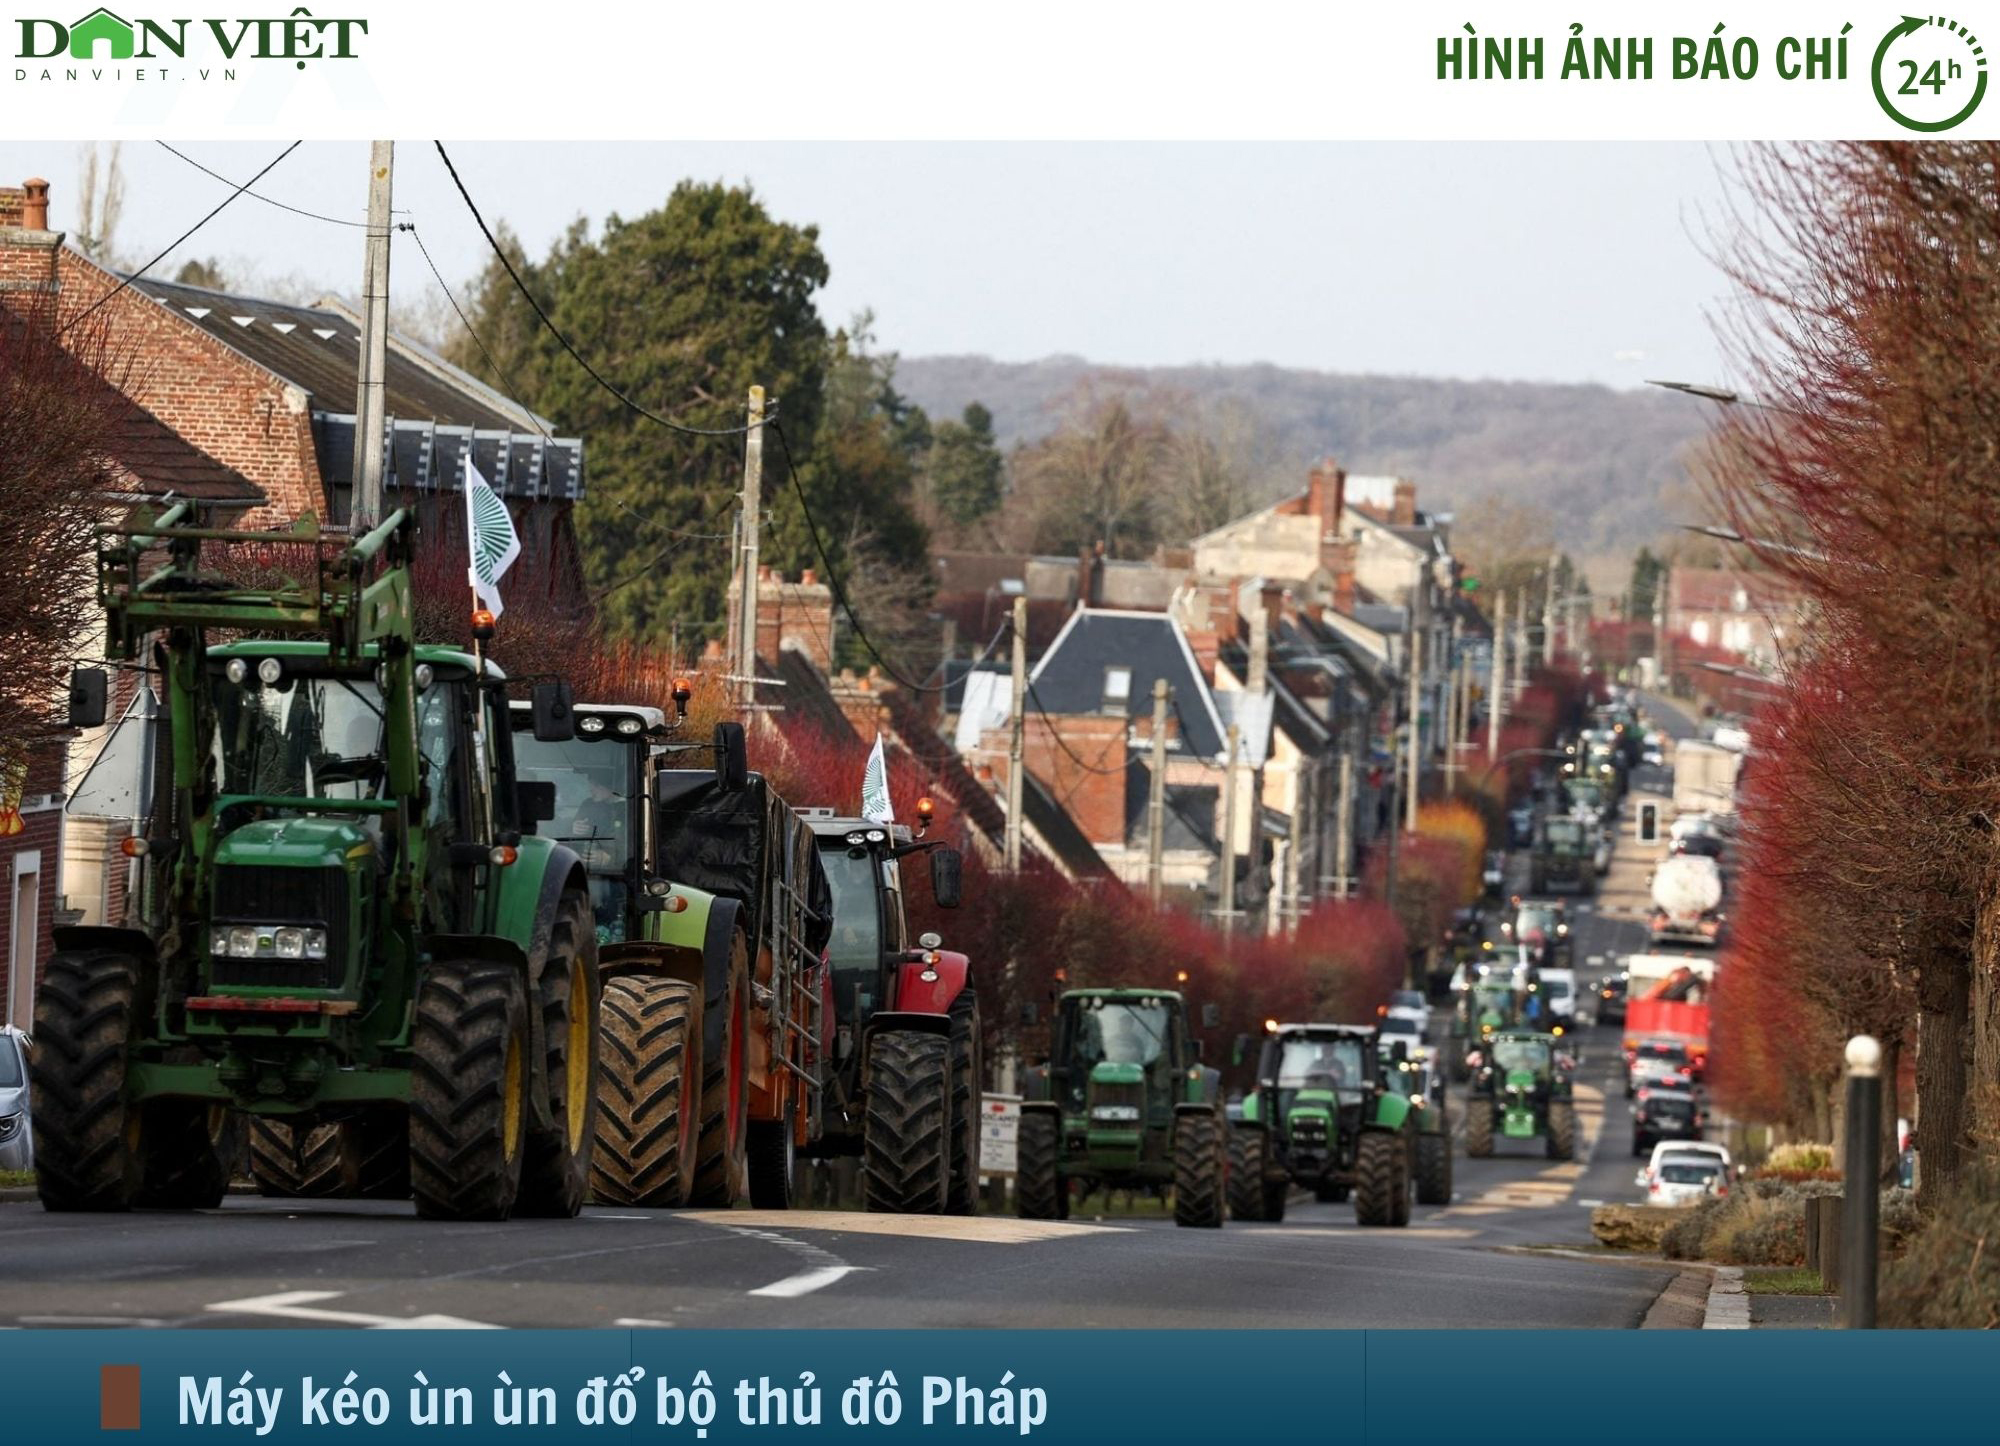 Hình ảnh báo chí 24h: Hàng nghìn máy kéo ùn ùn đổ bộ thủ đô nước Pháp- Ảnh 1.